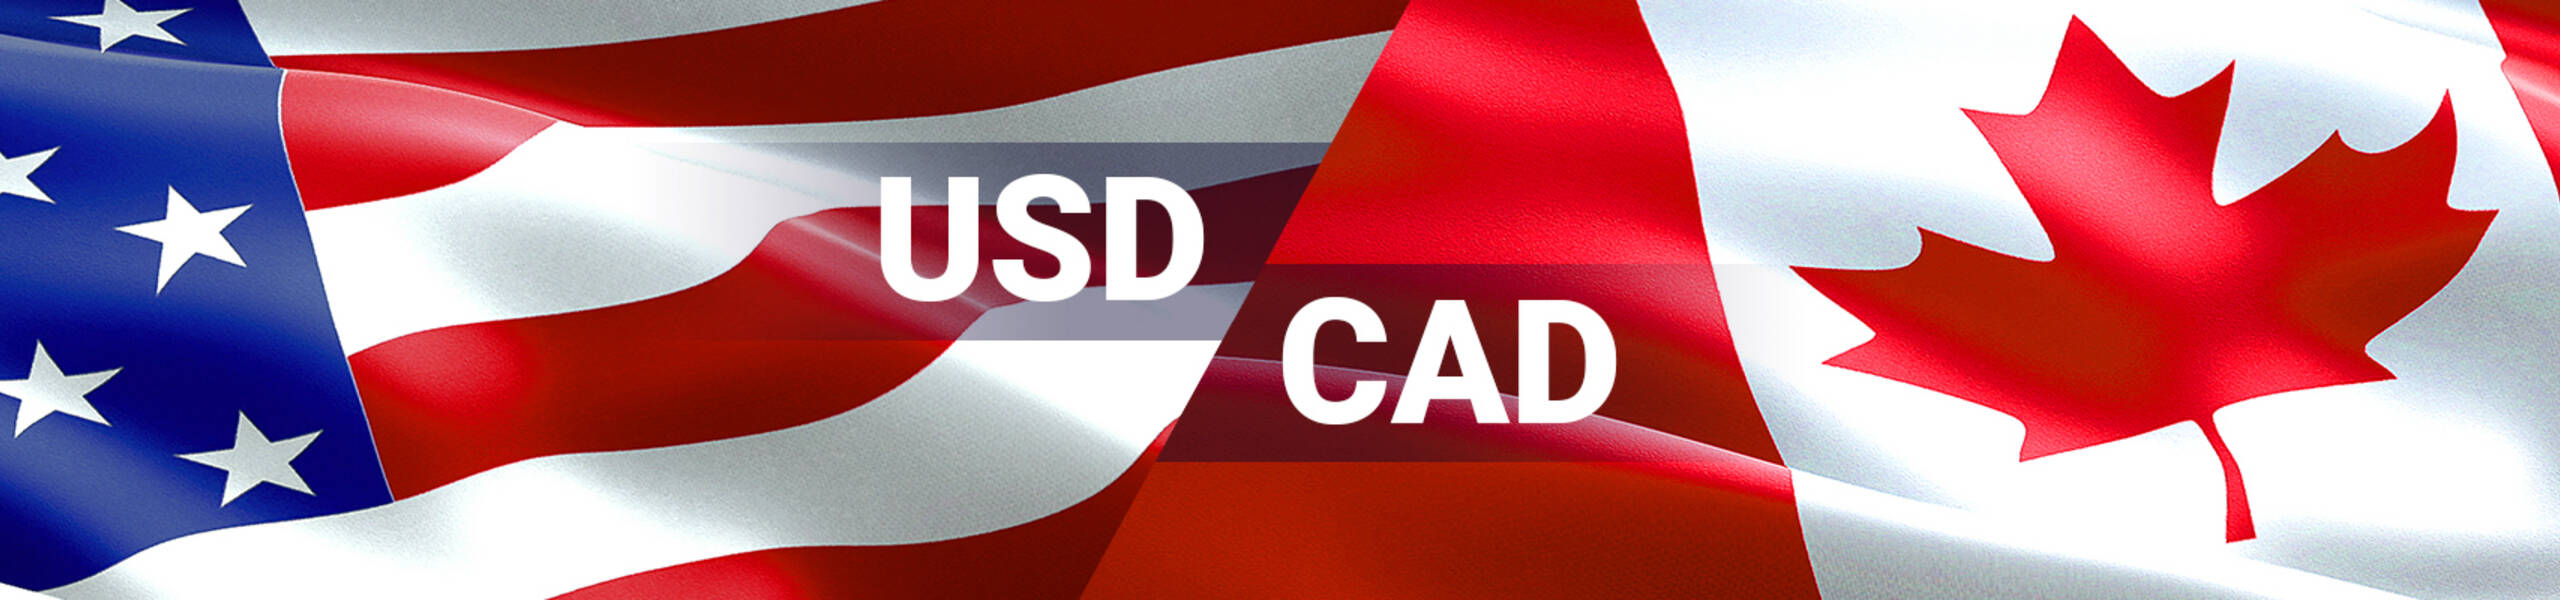 USD/CAD Previsión Semanal Oct 29 - Nov 2.